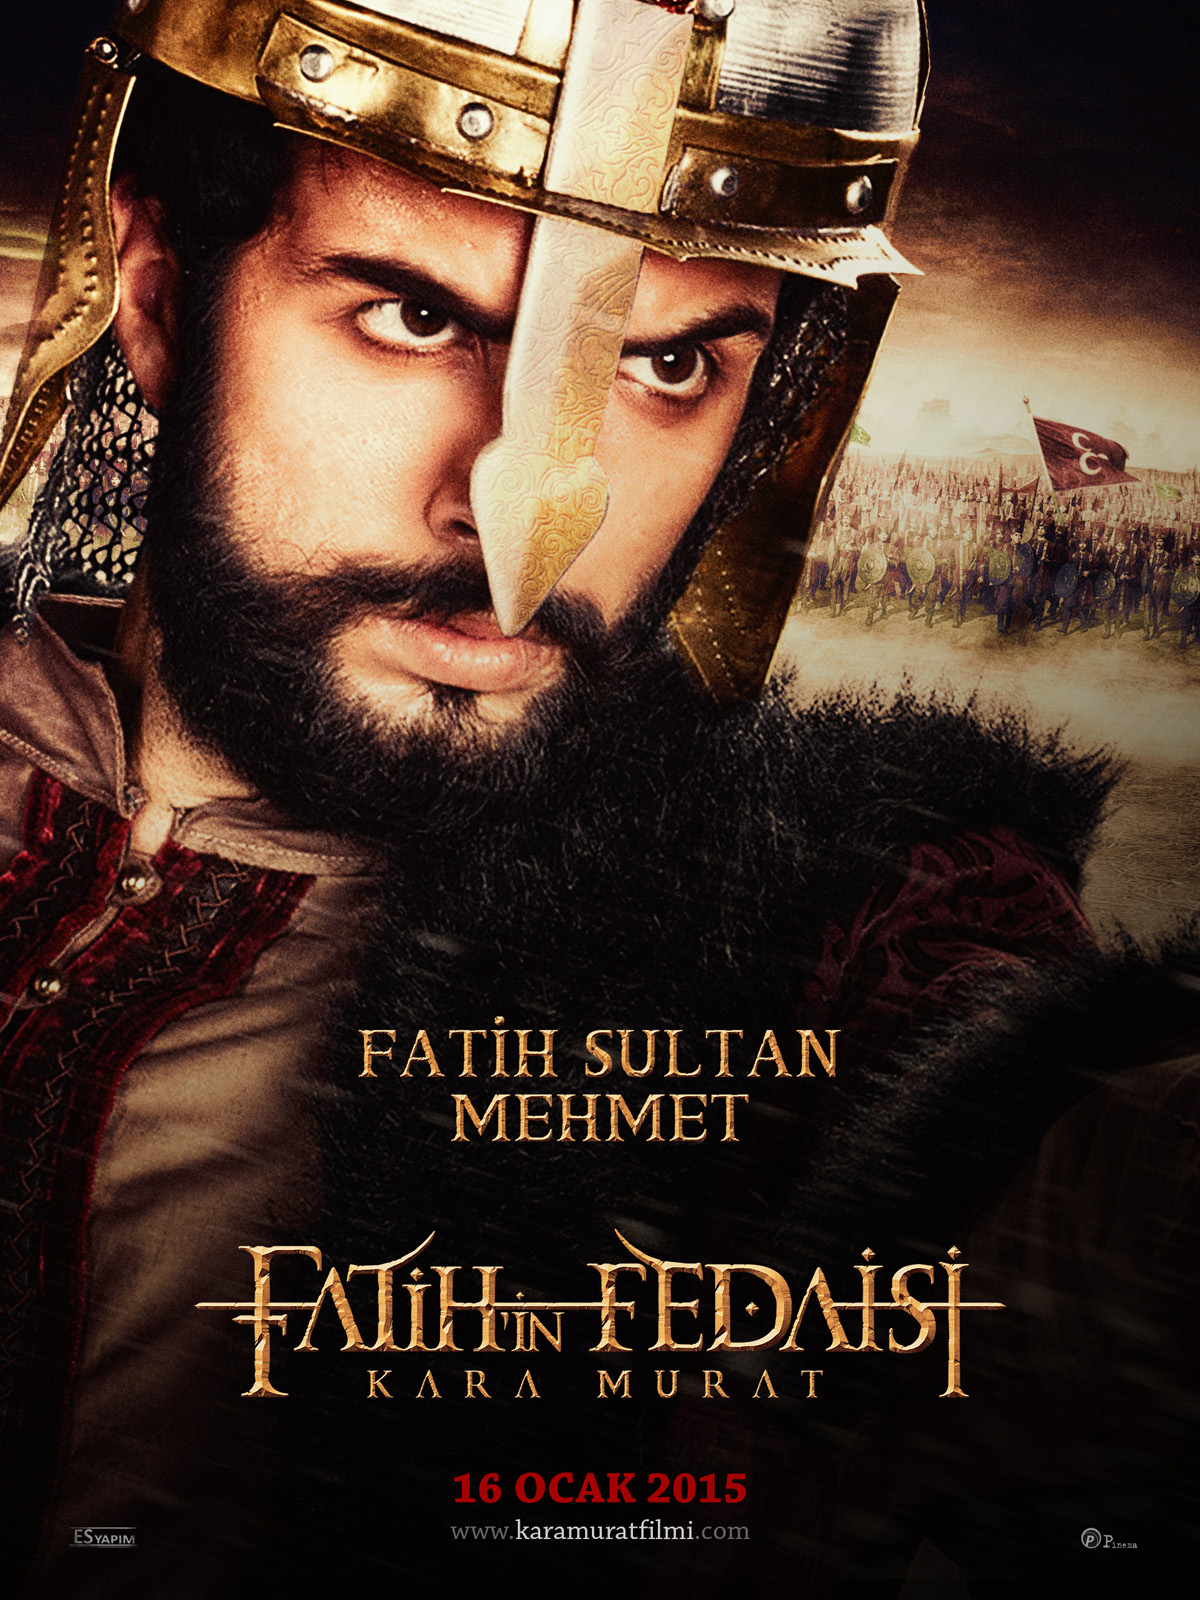 Fatih’in Fedaisi Kara Murat